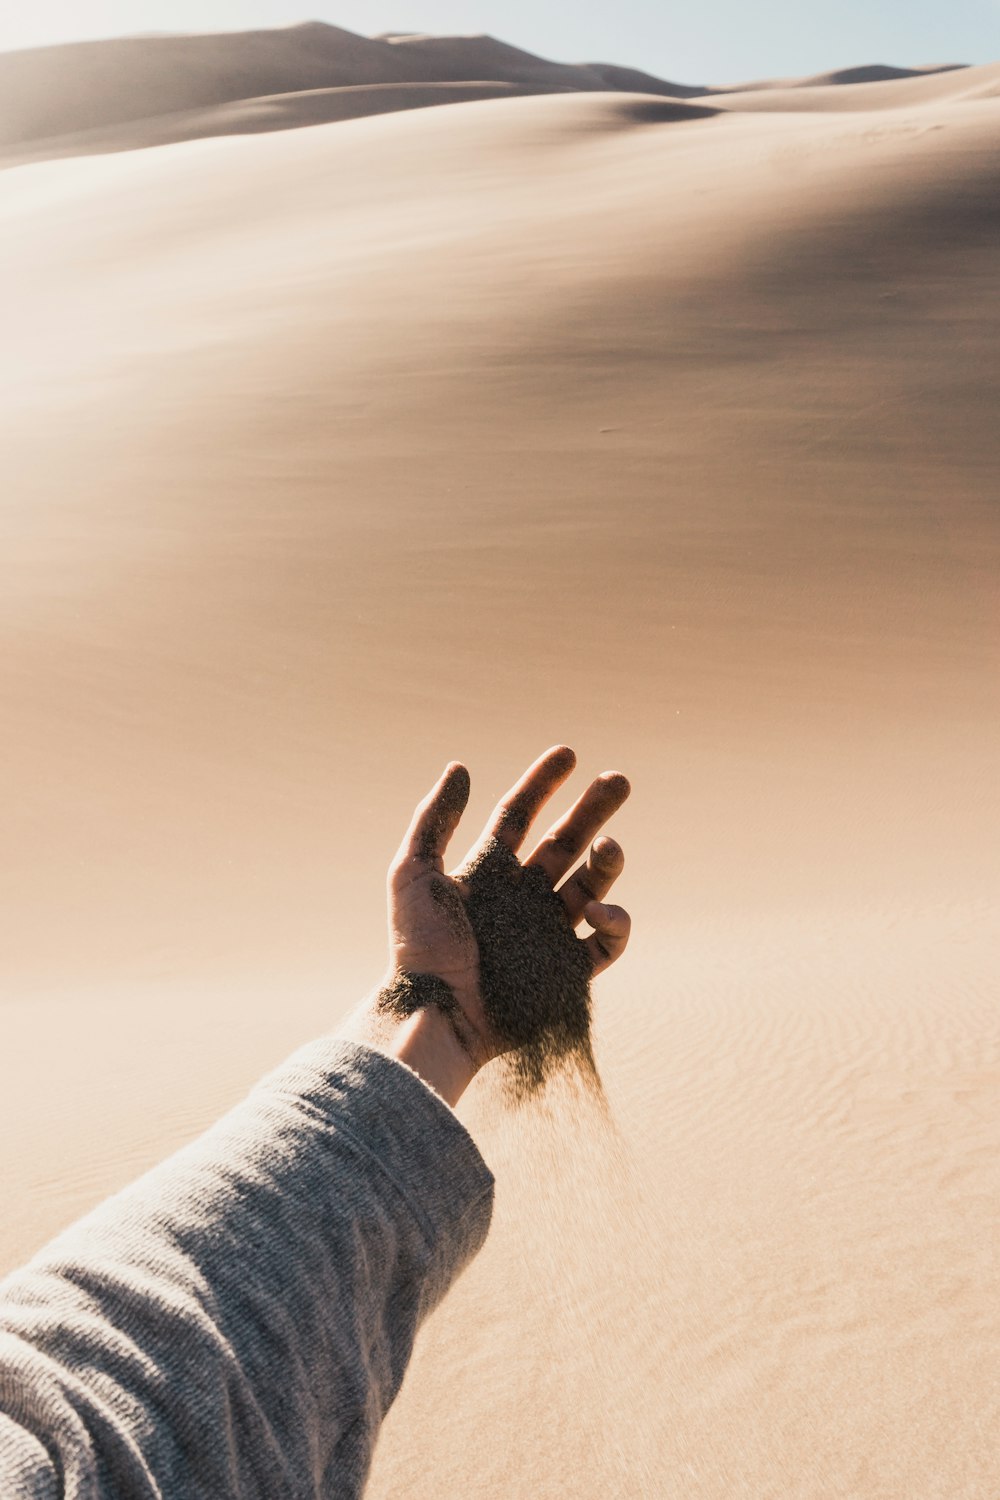 pessoa soltando areia de sua mão durante o dia.